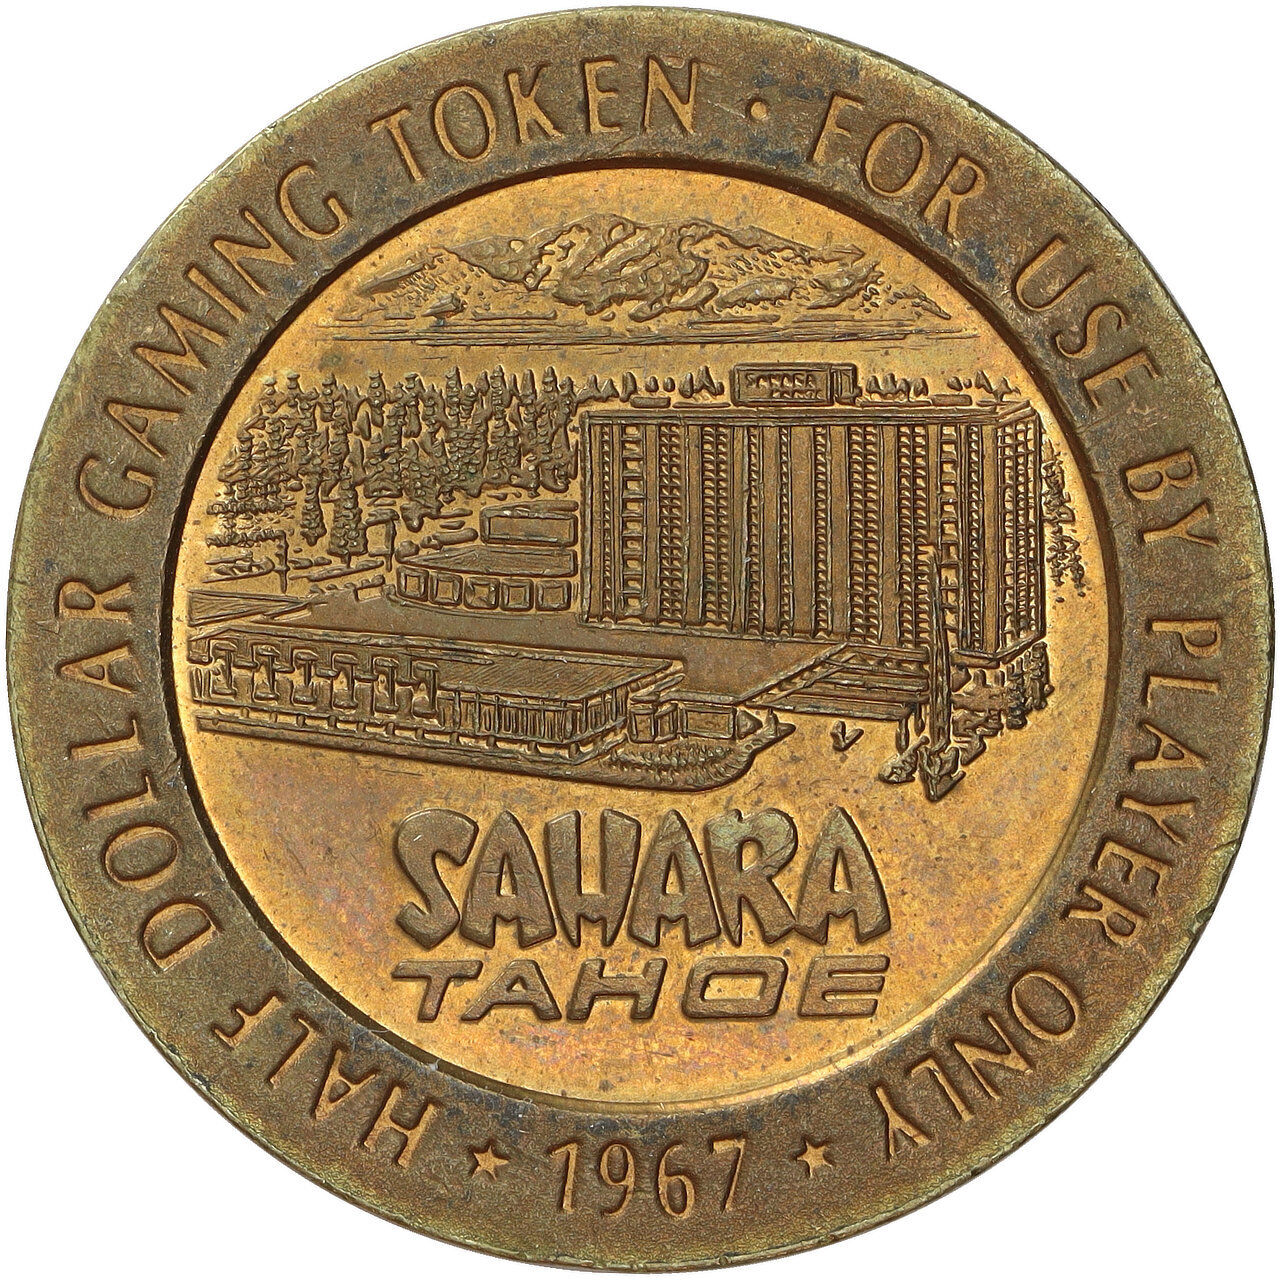 Vintage 1967 Sahara Tahoe 50C Gaming Token